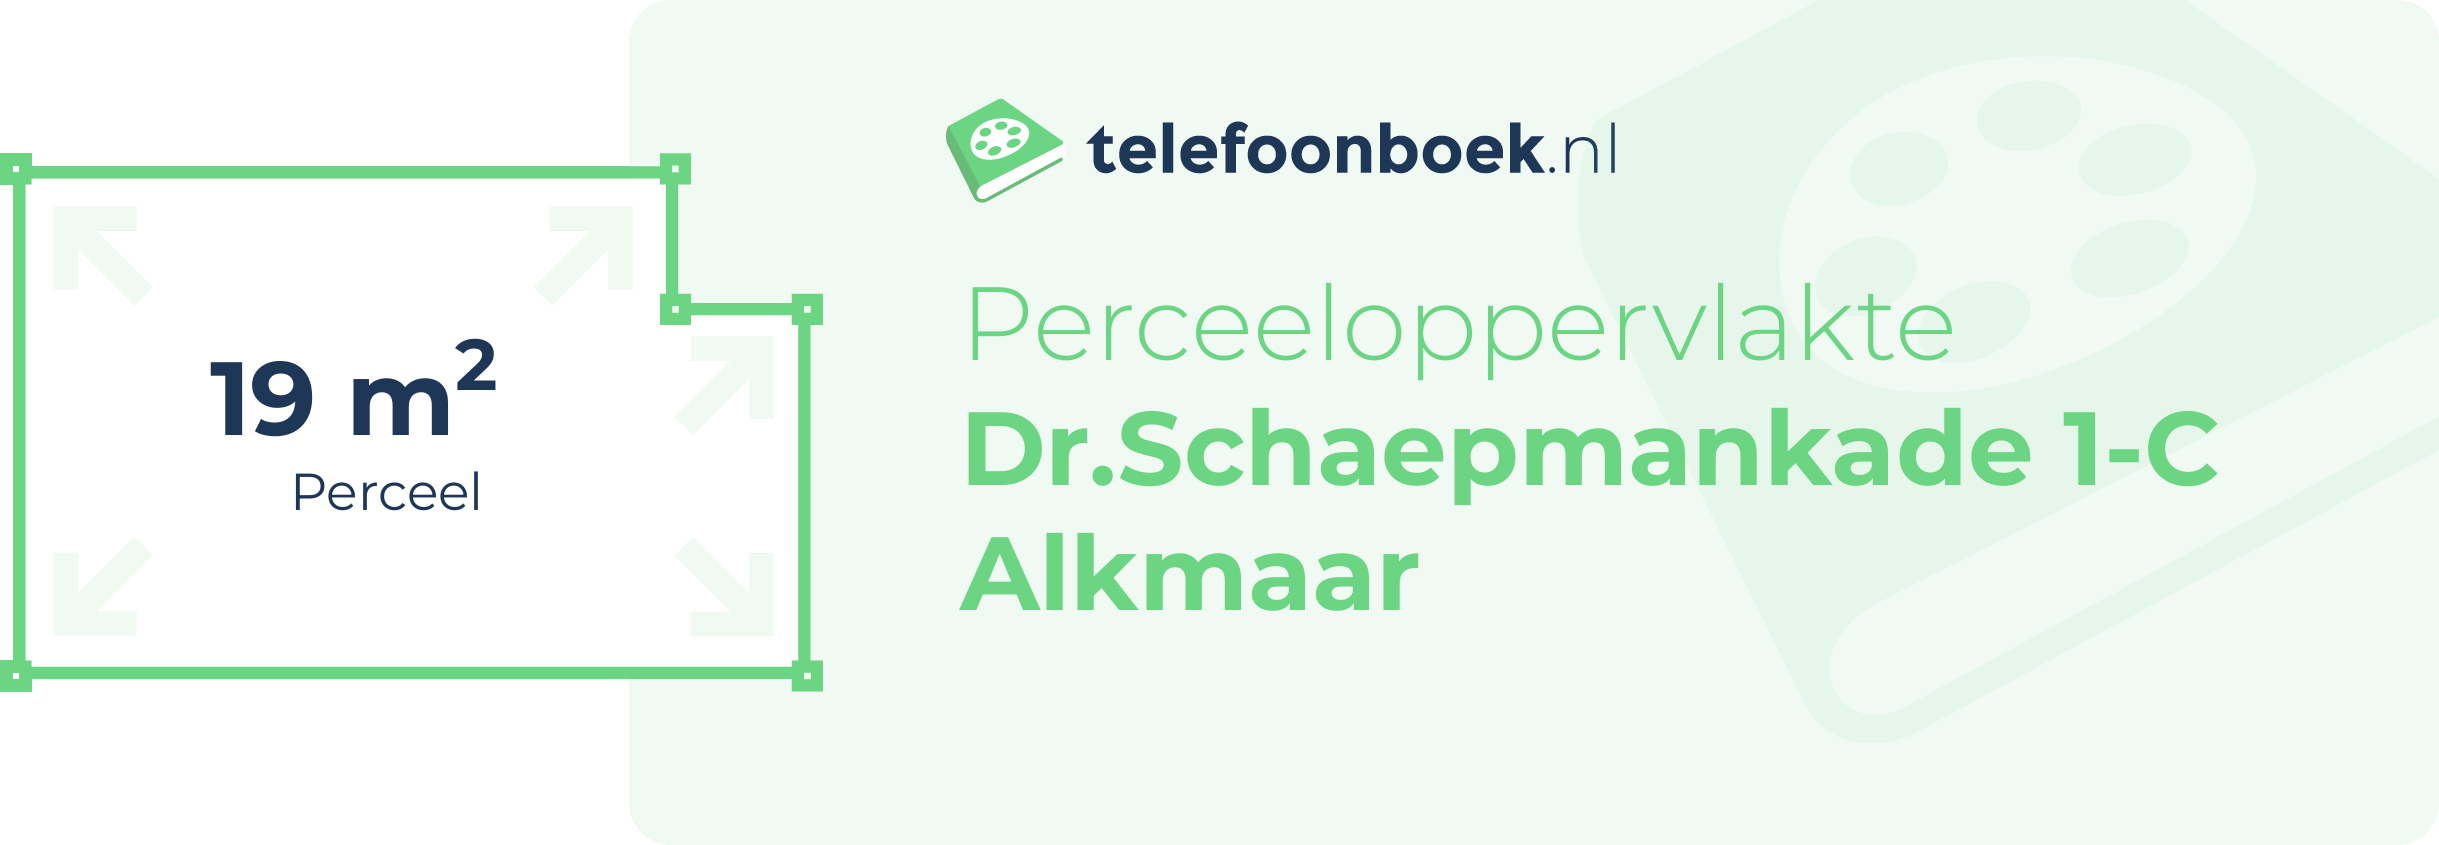 Perceeloppervlakte Dr.Schaepmankade 1-C Alkmaar